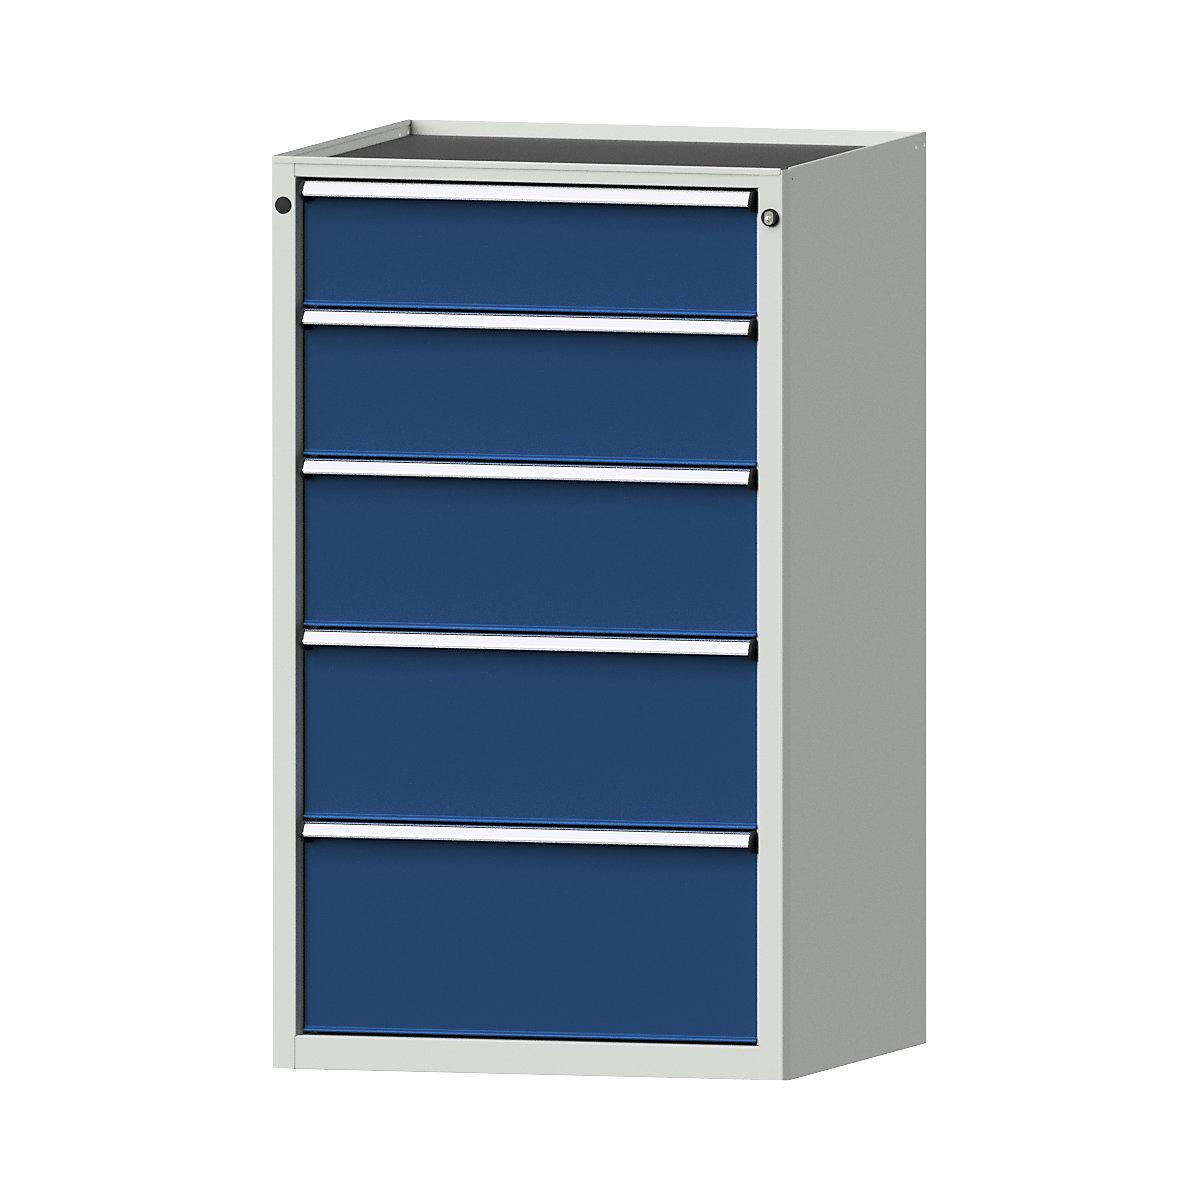 Szafa z szufladami – ANKE, szer. x głęb. 760 x 675 mm, nośność szuflady 200 kg, 5 szuflad, wys. 1280 mm, front niebieski gencjanowy-7